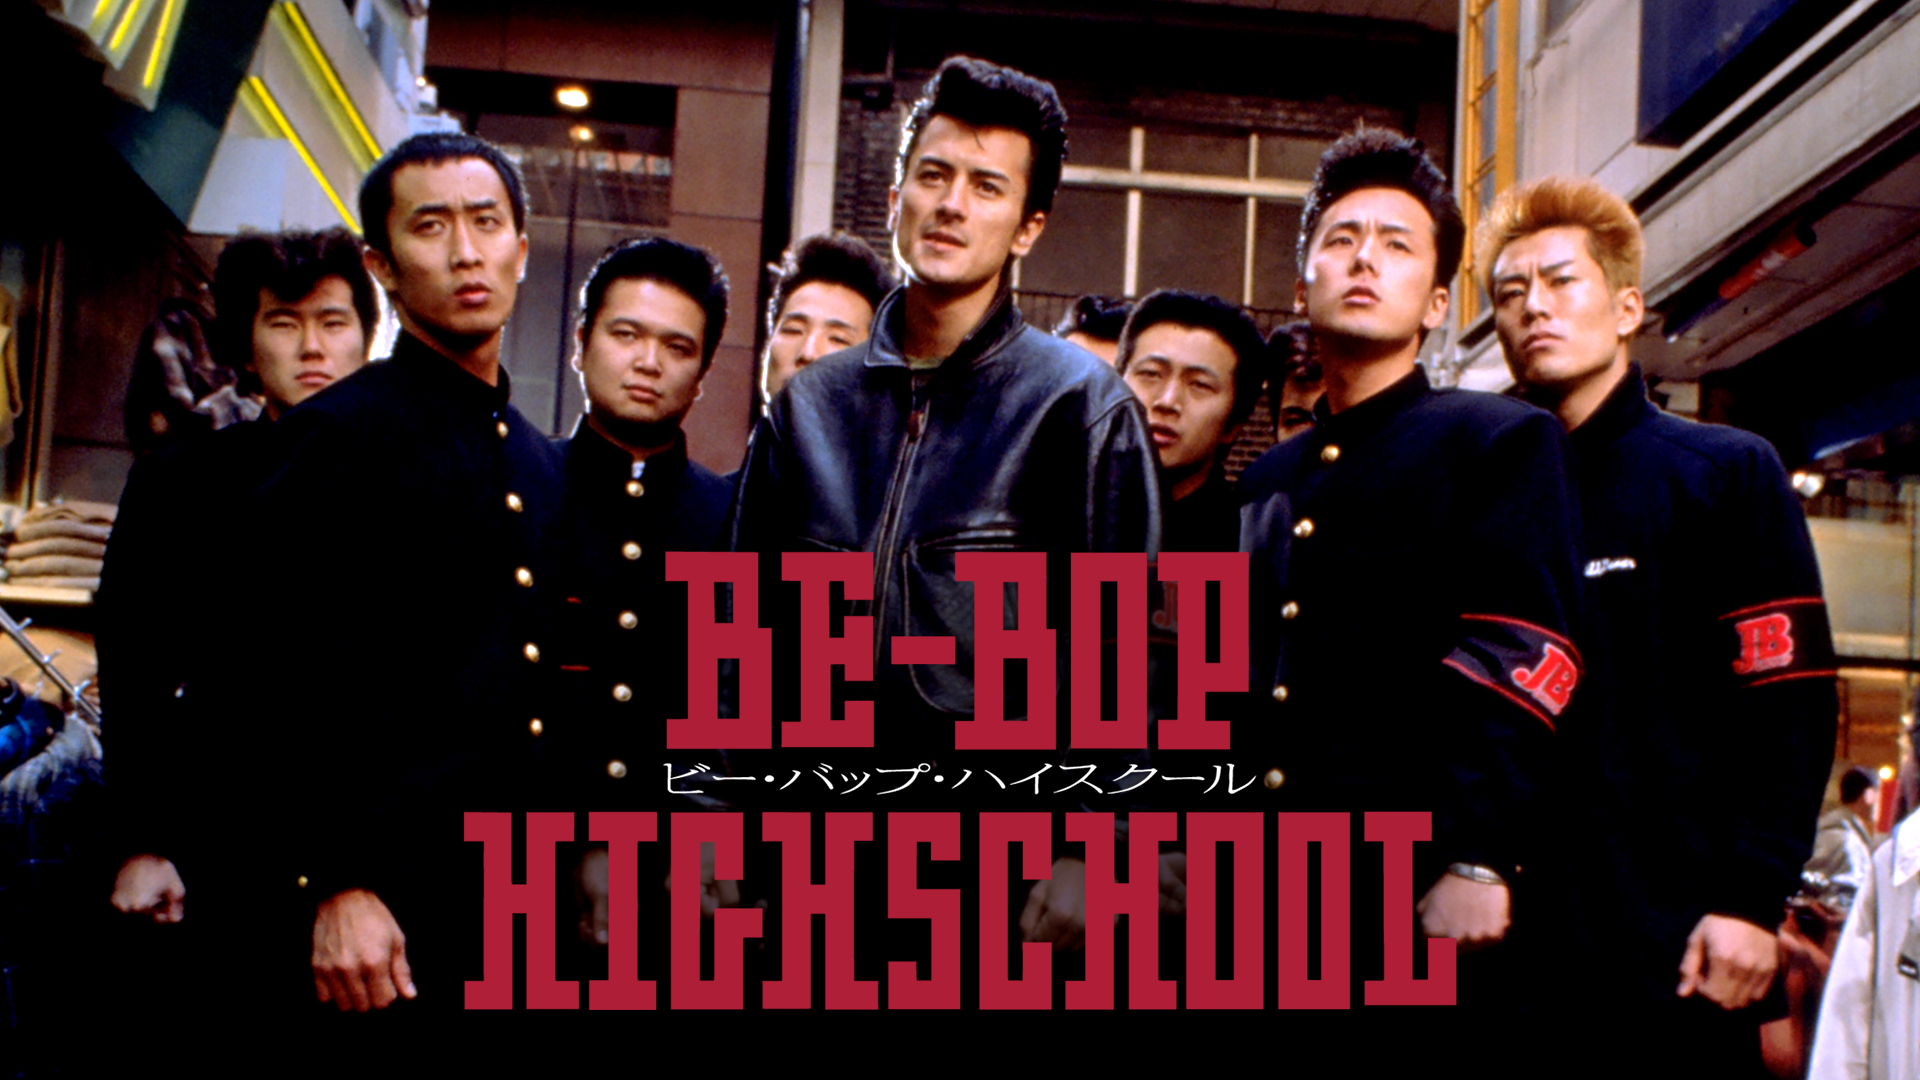 Be Bop High School ビー バップ ハイスクール 邦画 1994 の動画視聴 U Next 31日間無料トライアル